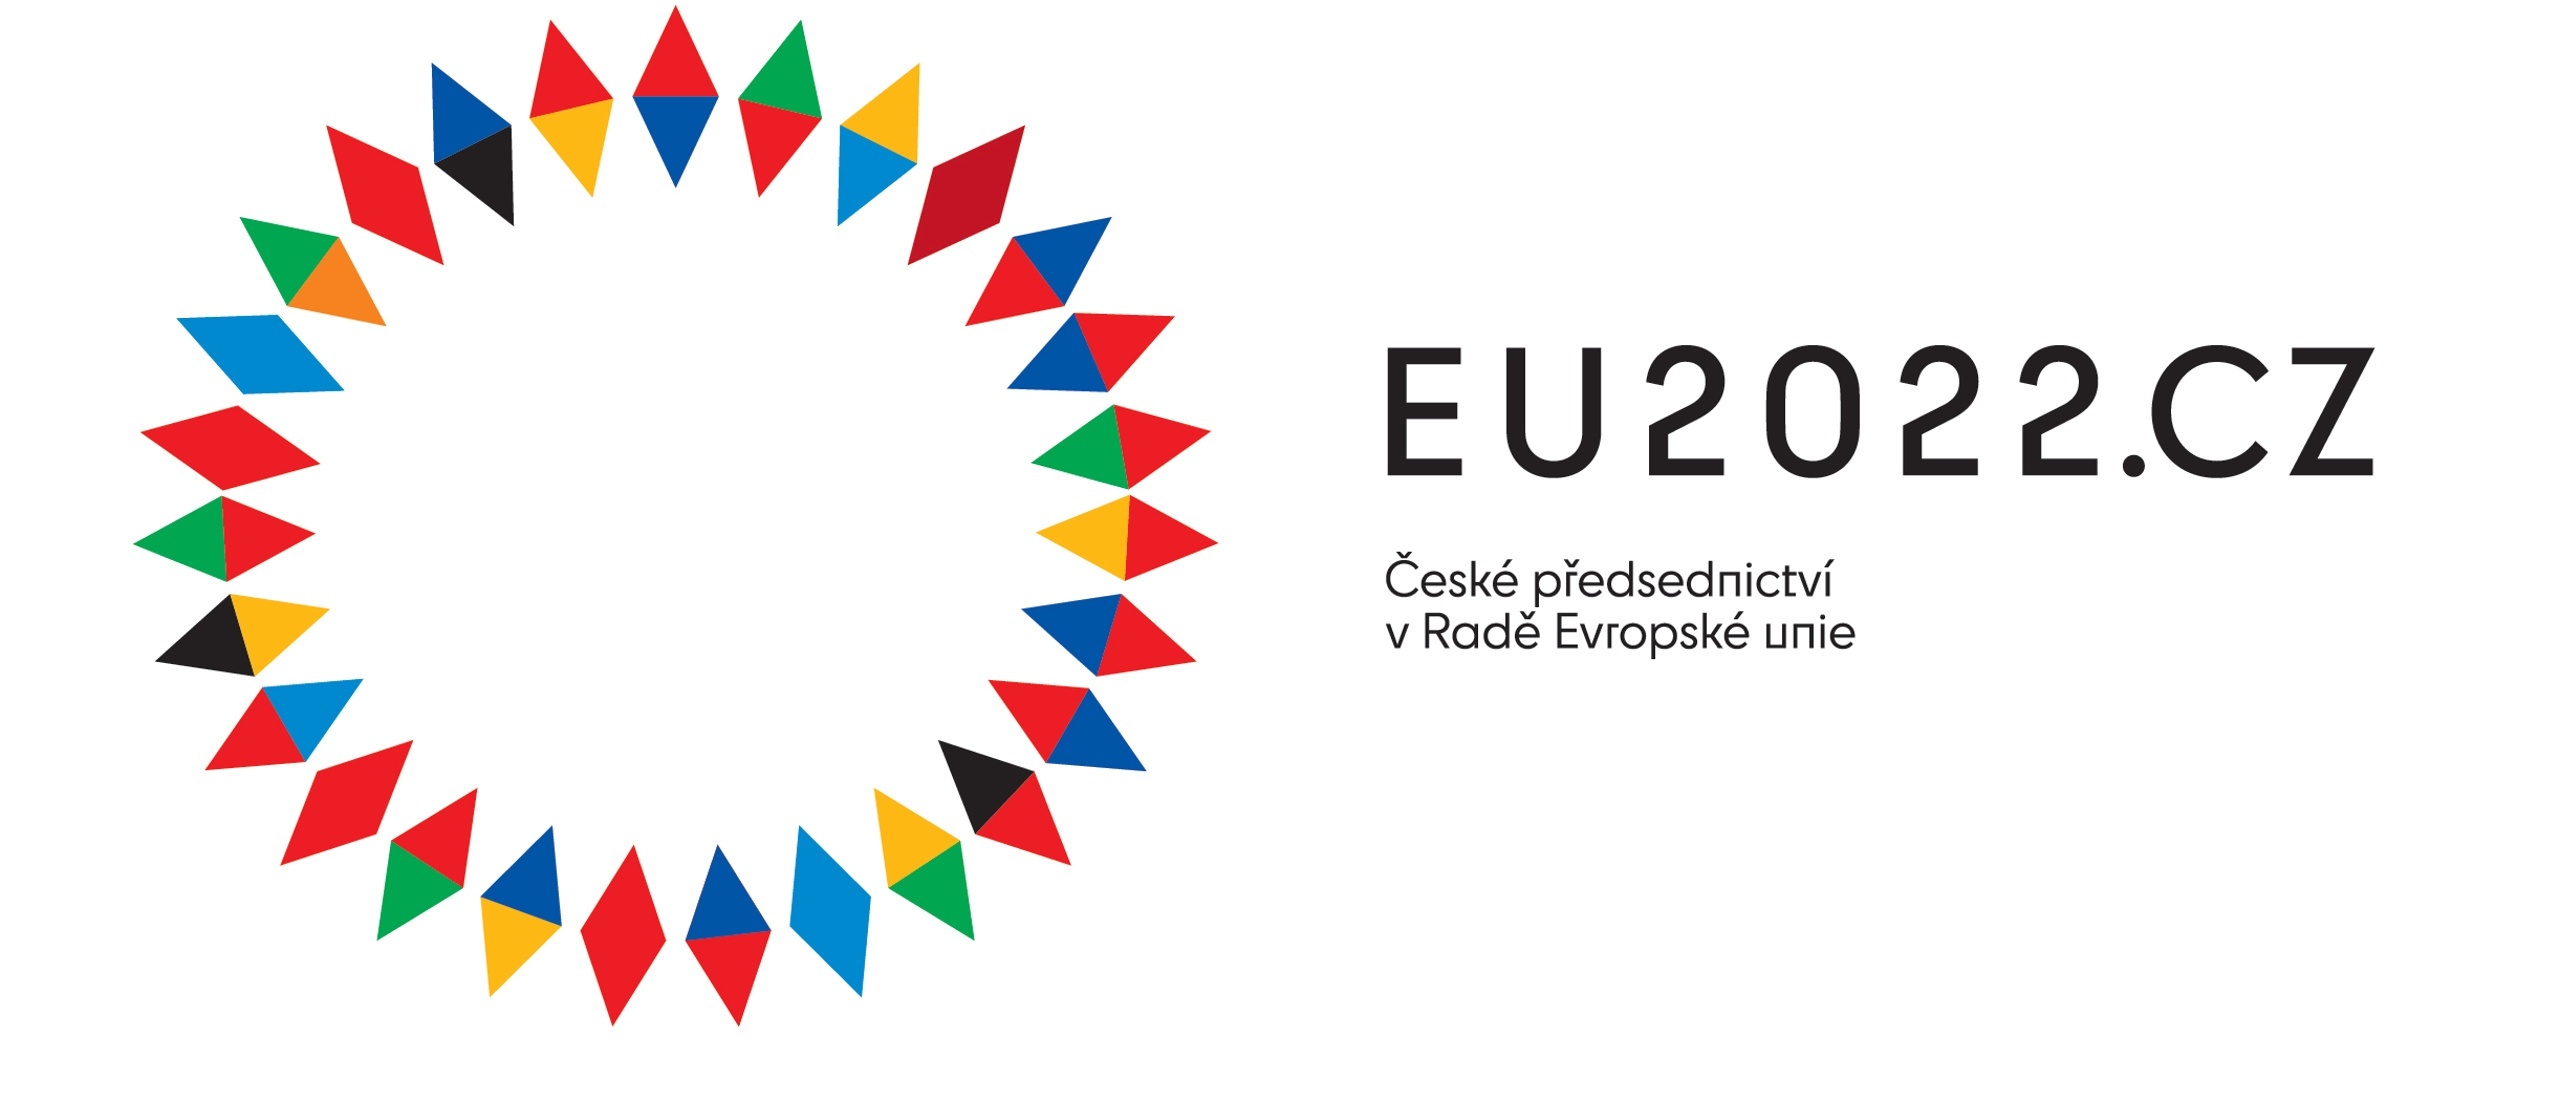 České předsednictví v Radě Evropské unie